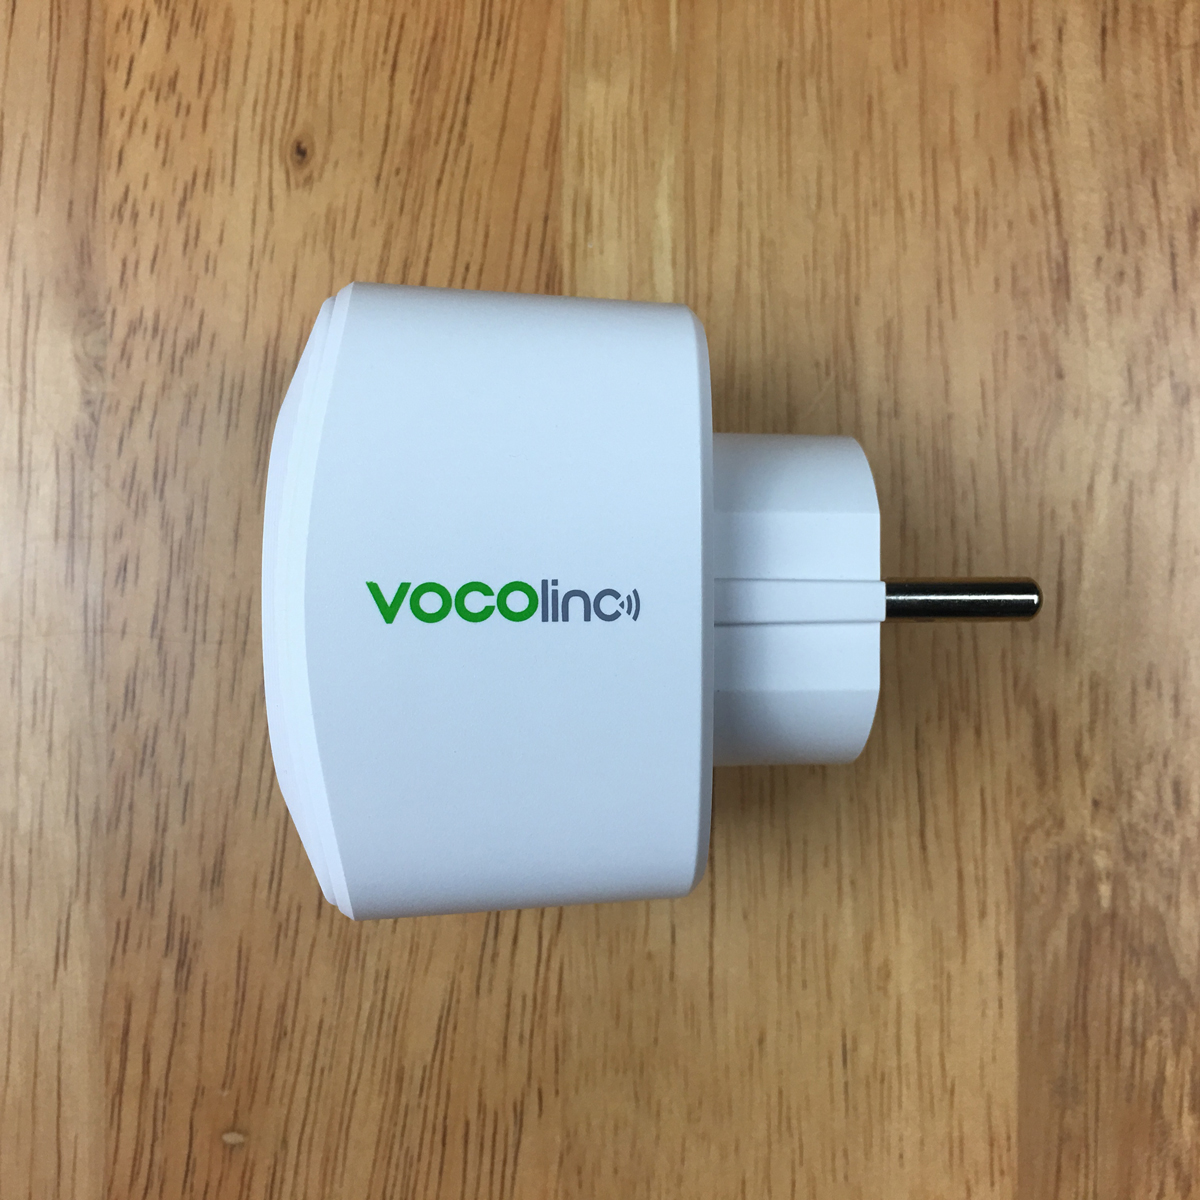 The Vocolinc EU Smart Plug and Power Strip - First Look 15